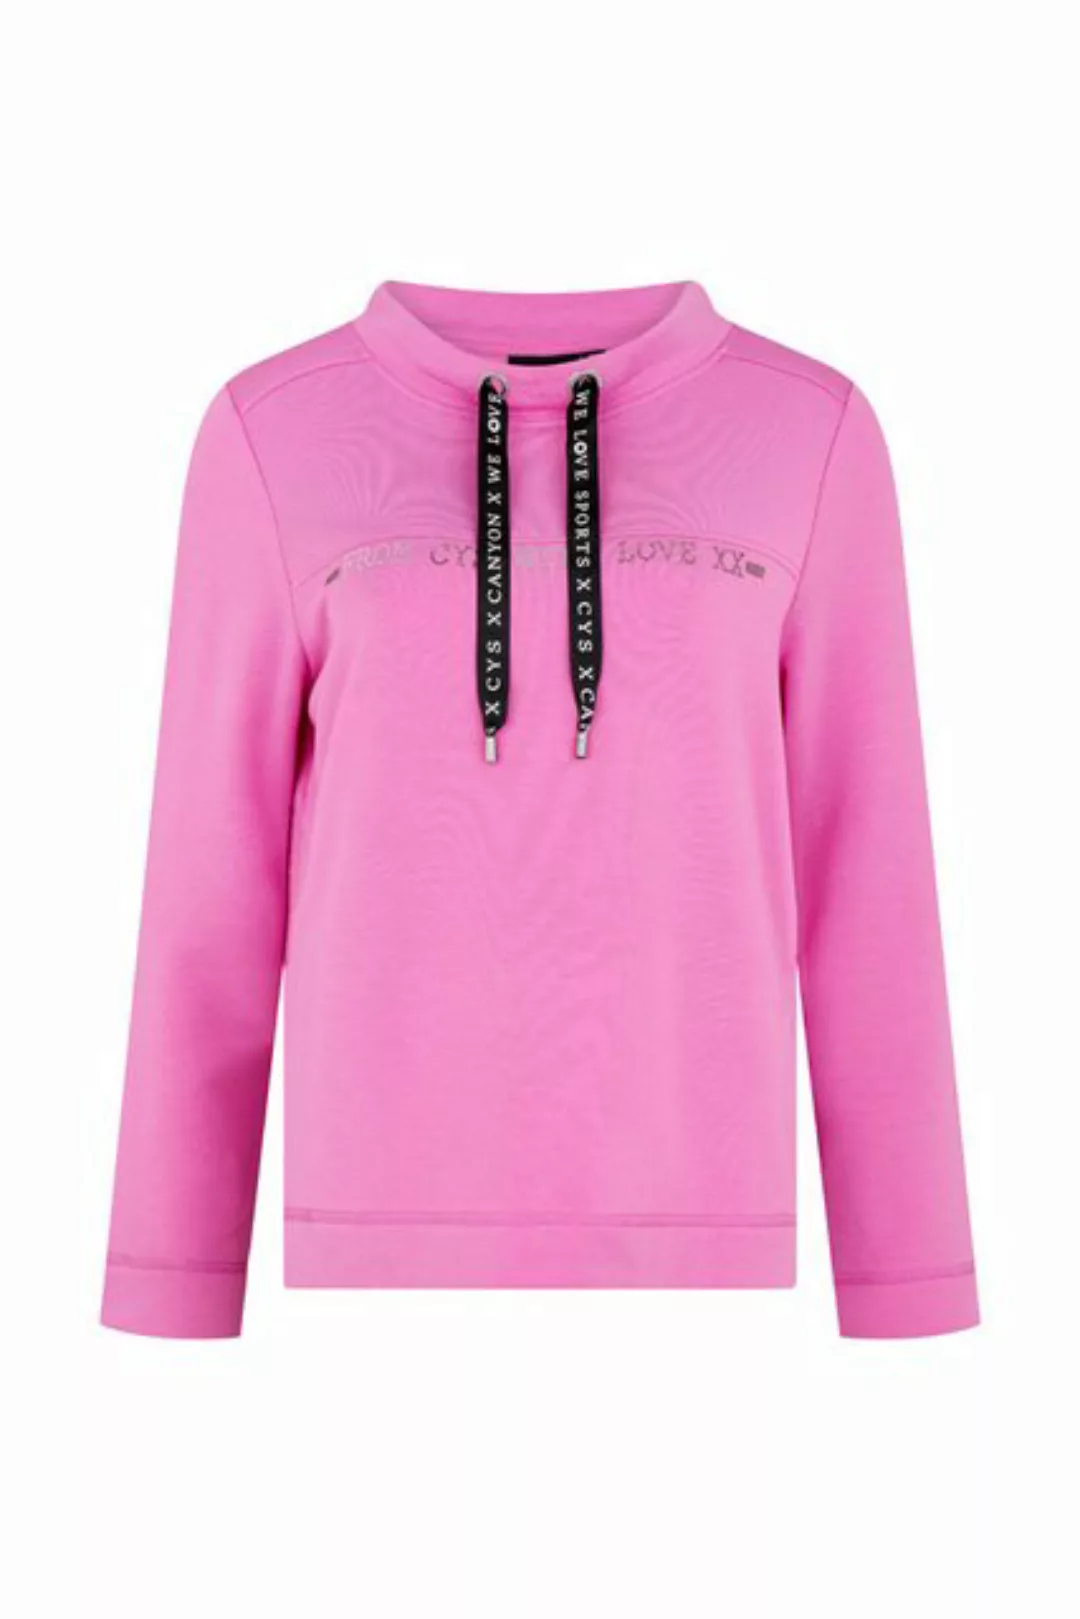 Canyon women sports Sweatshirt 607301 Z günstig online kaufen